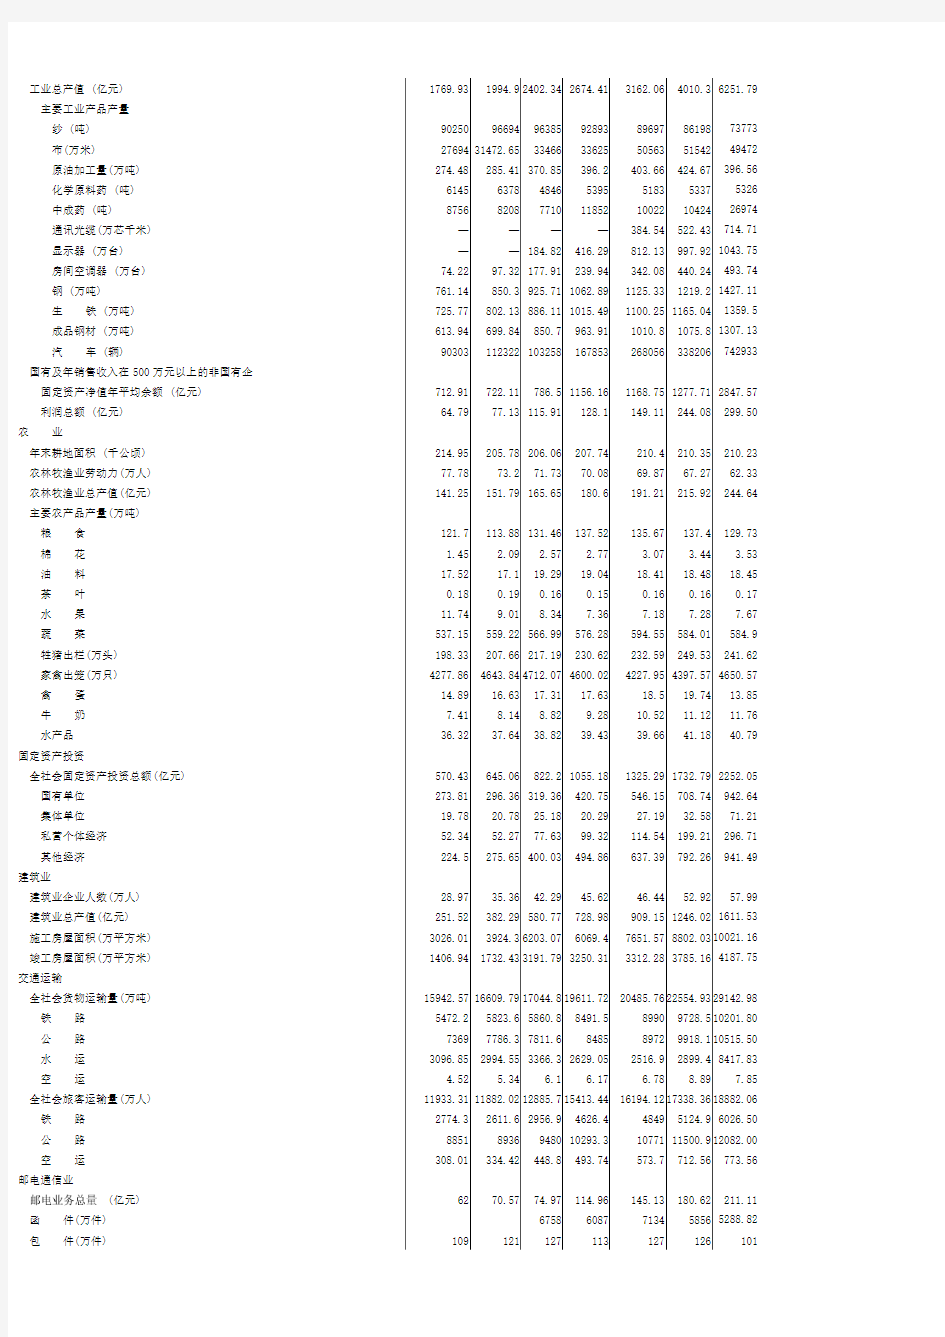 武汉市统计年鉴2009